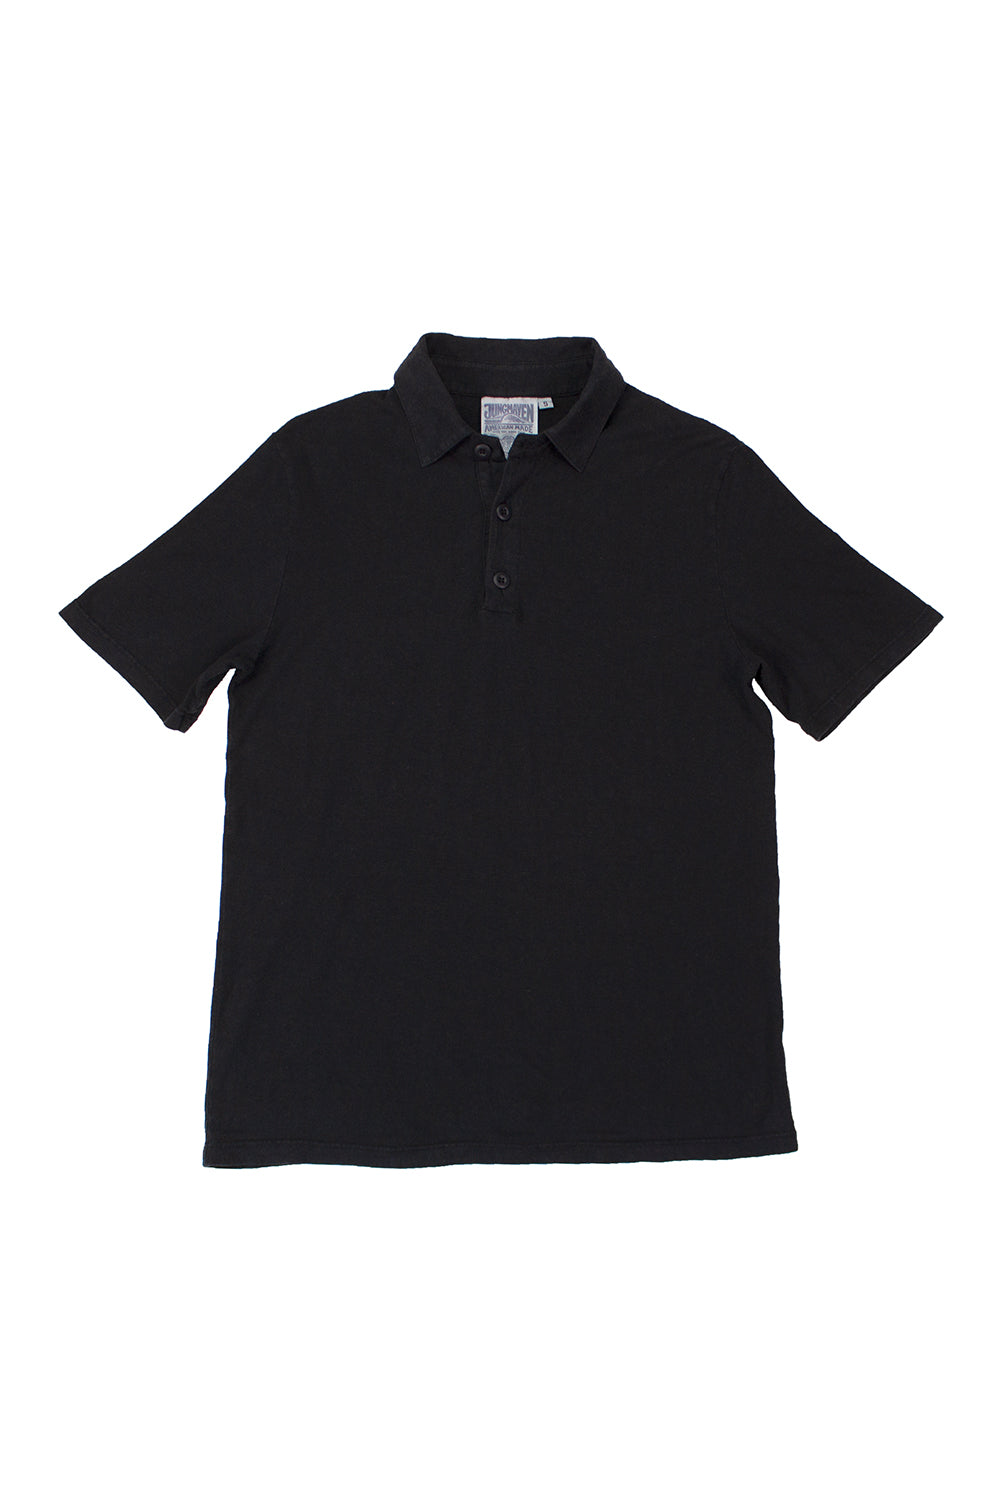 Polo Shirt - 5 oz | Jungmaven Hemp & Accessories